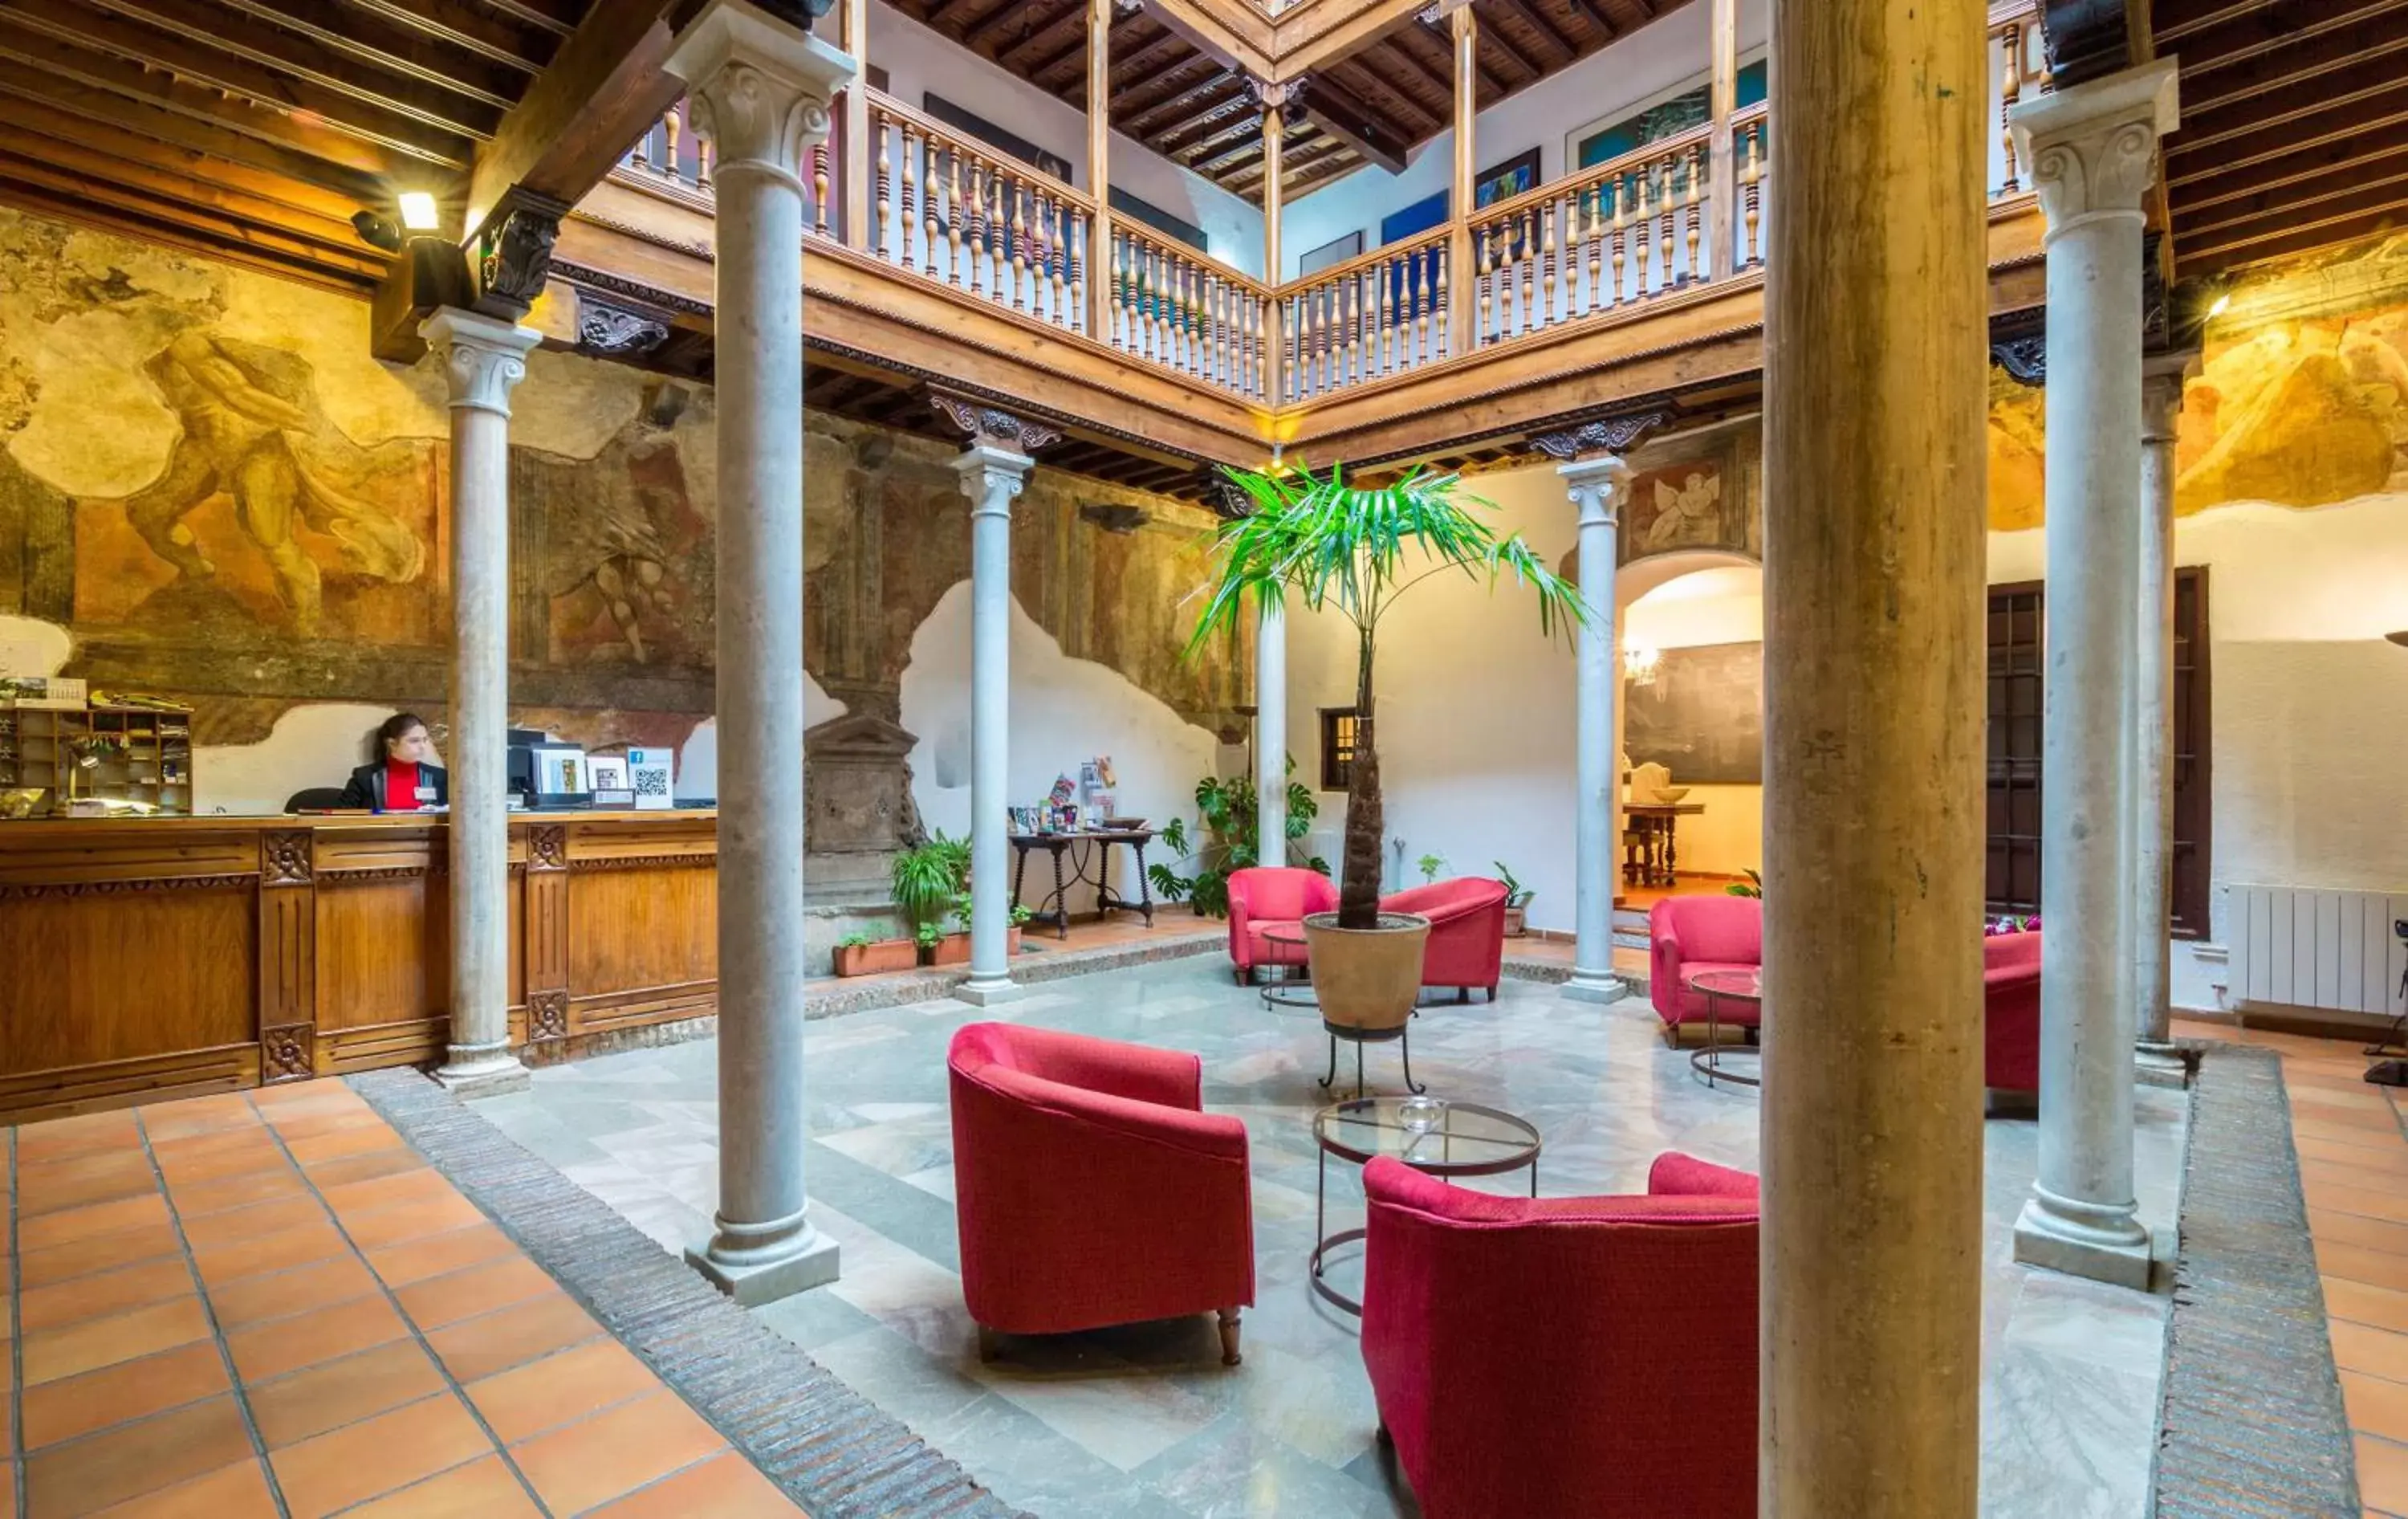 Lobby or reception in Palacio de Santa Inés